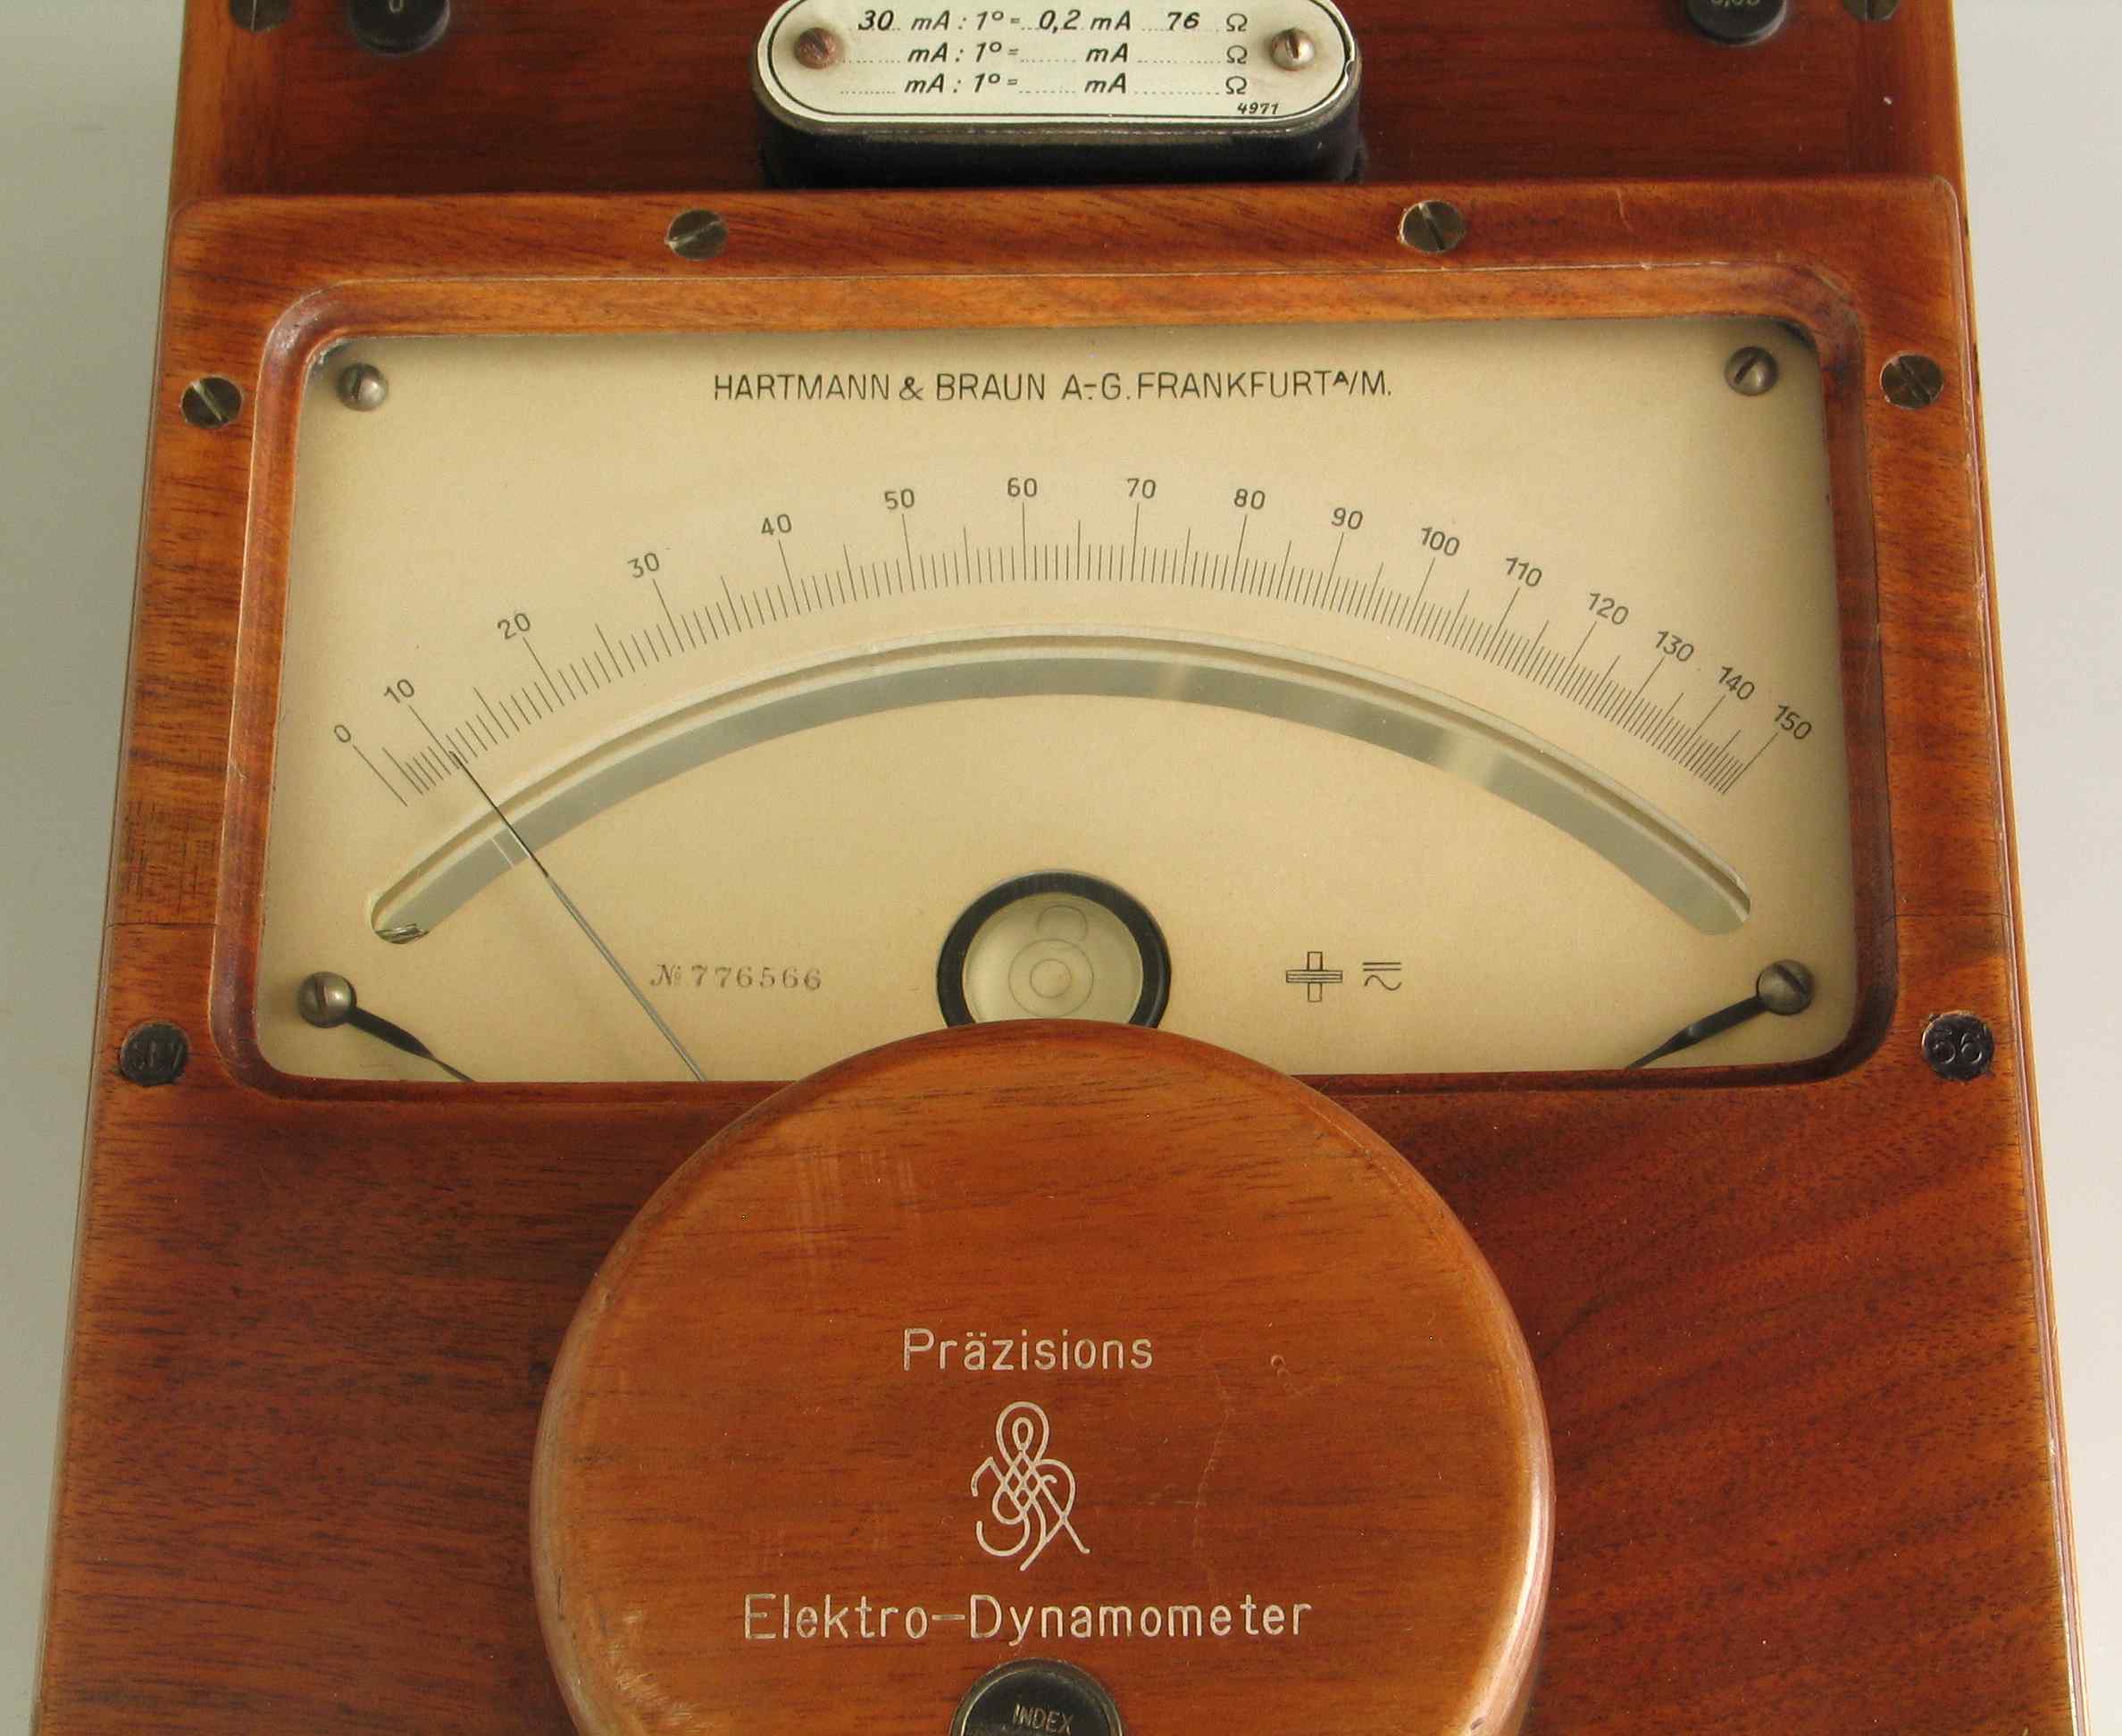 Électrodynamomètre de précision
(30 mA)